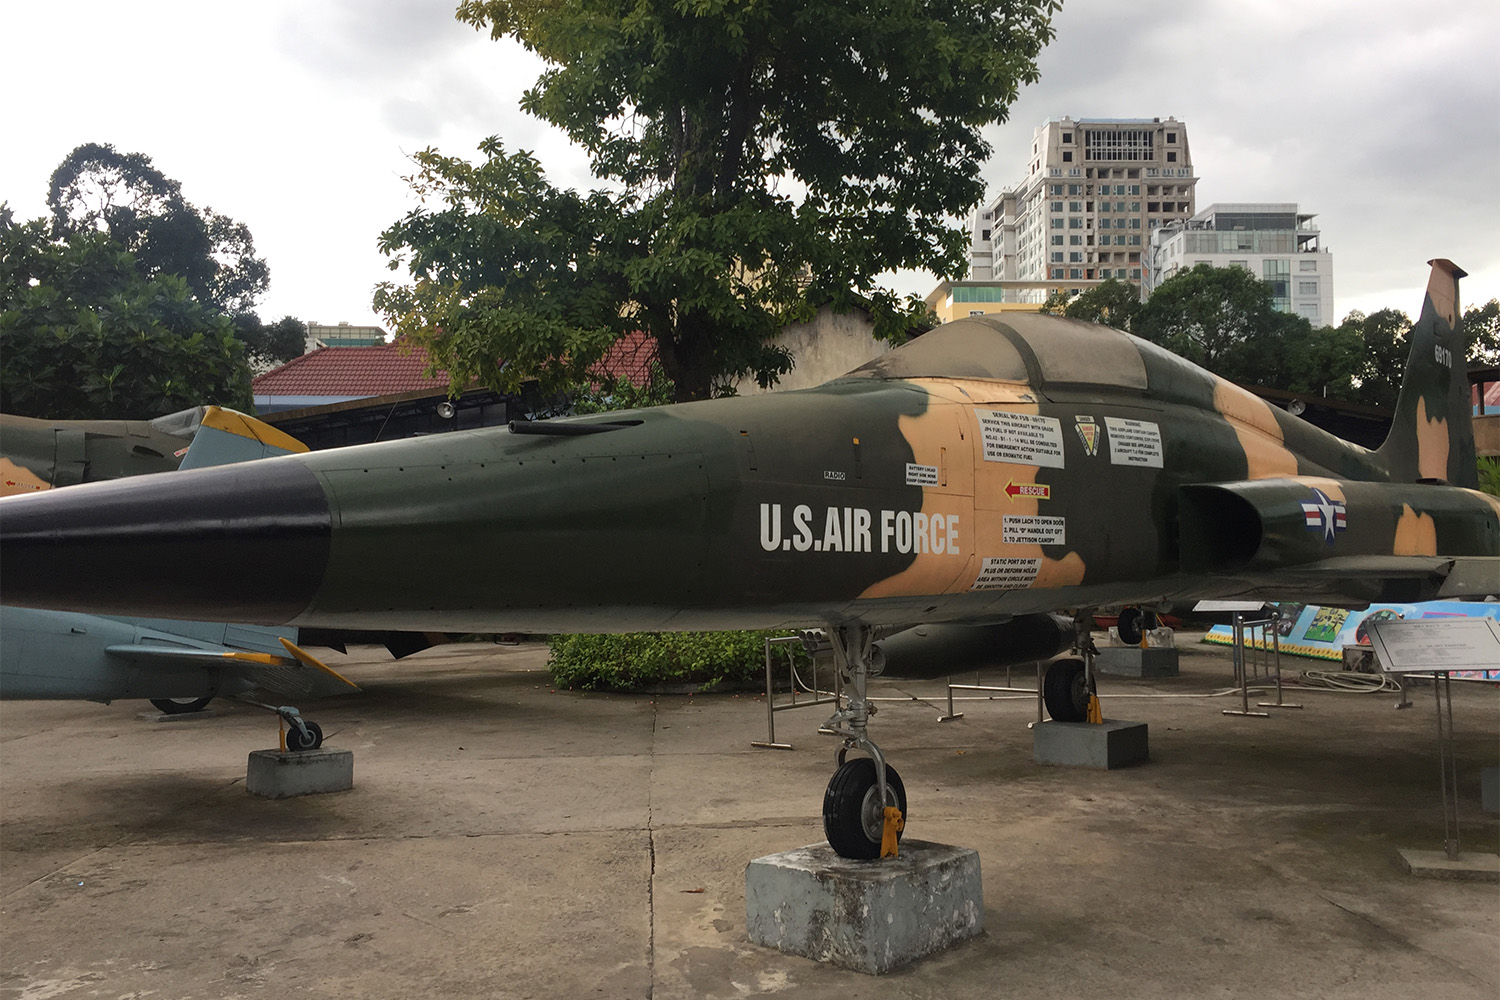 Un avion de chasse dans la cour du Musée, initialement appelé « musée des crimes de guerre américains », puis renommer afin de ne pas heurter les touristes américains.